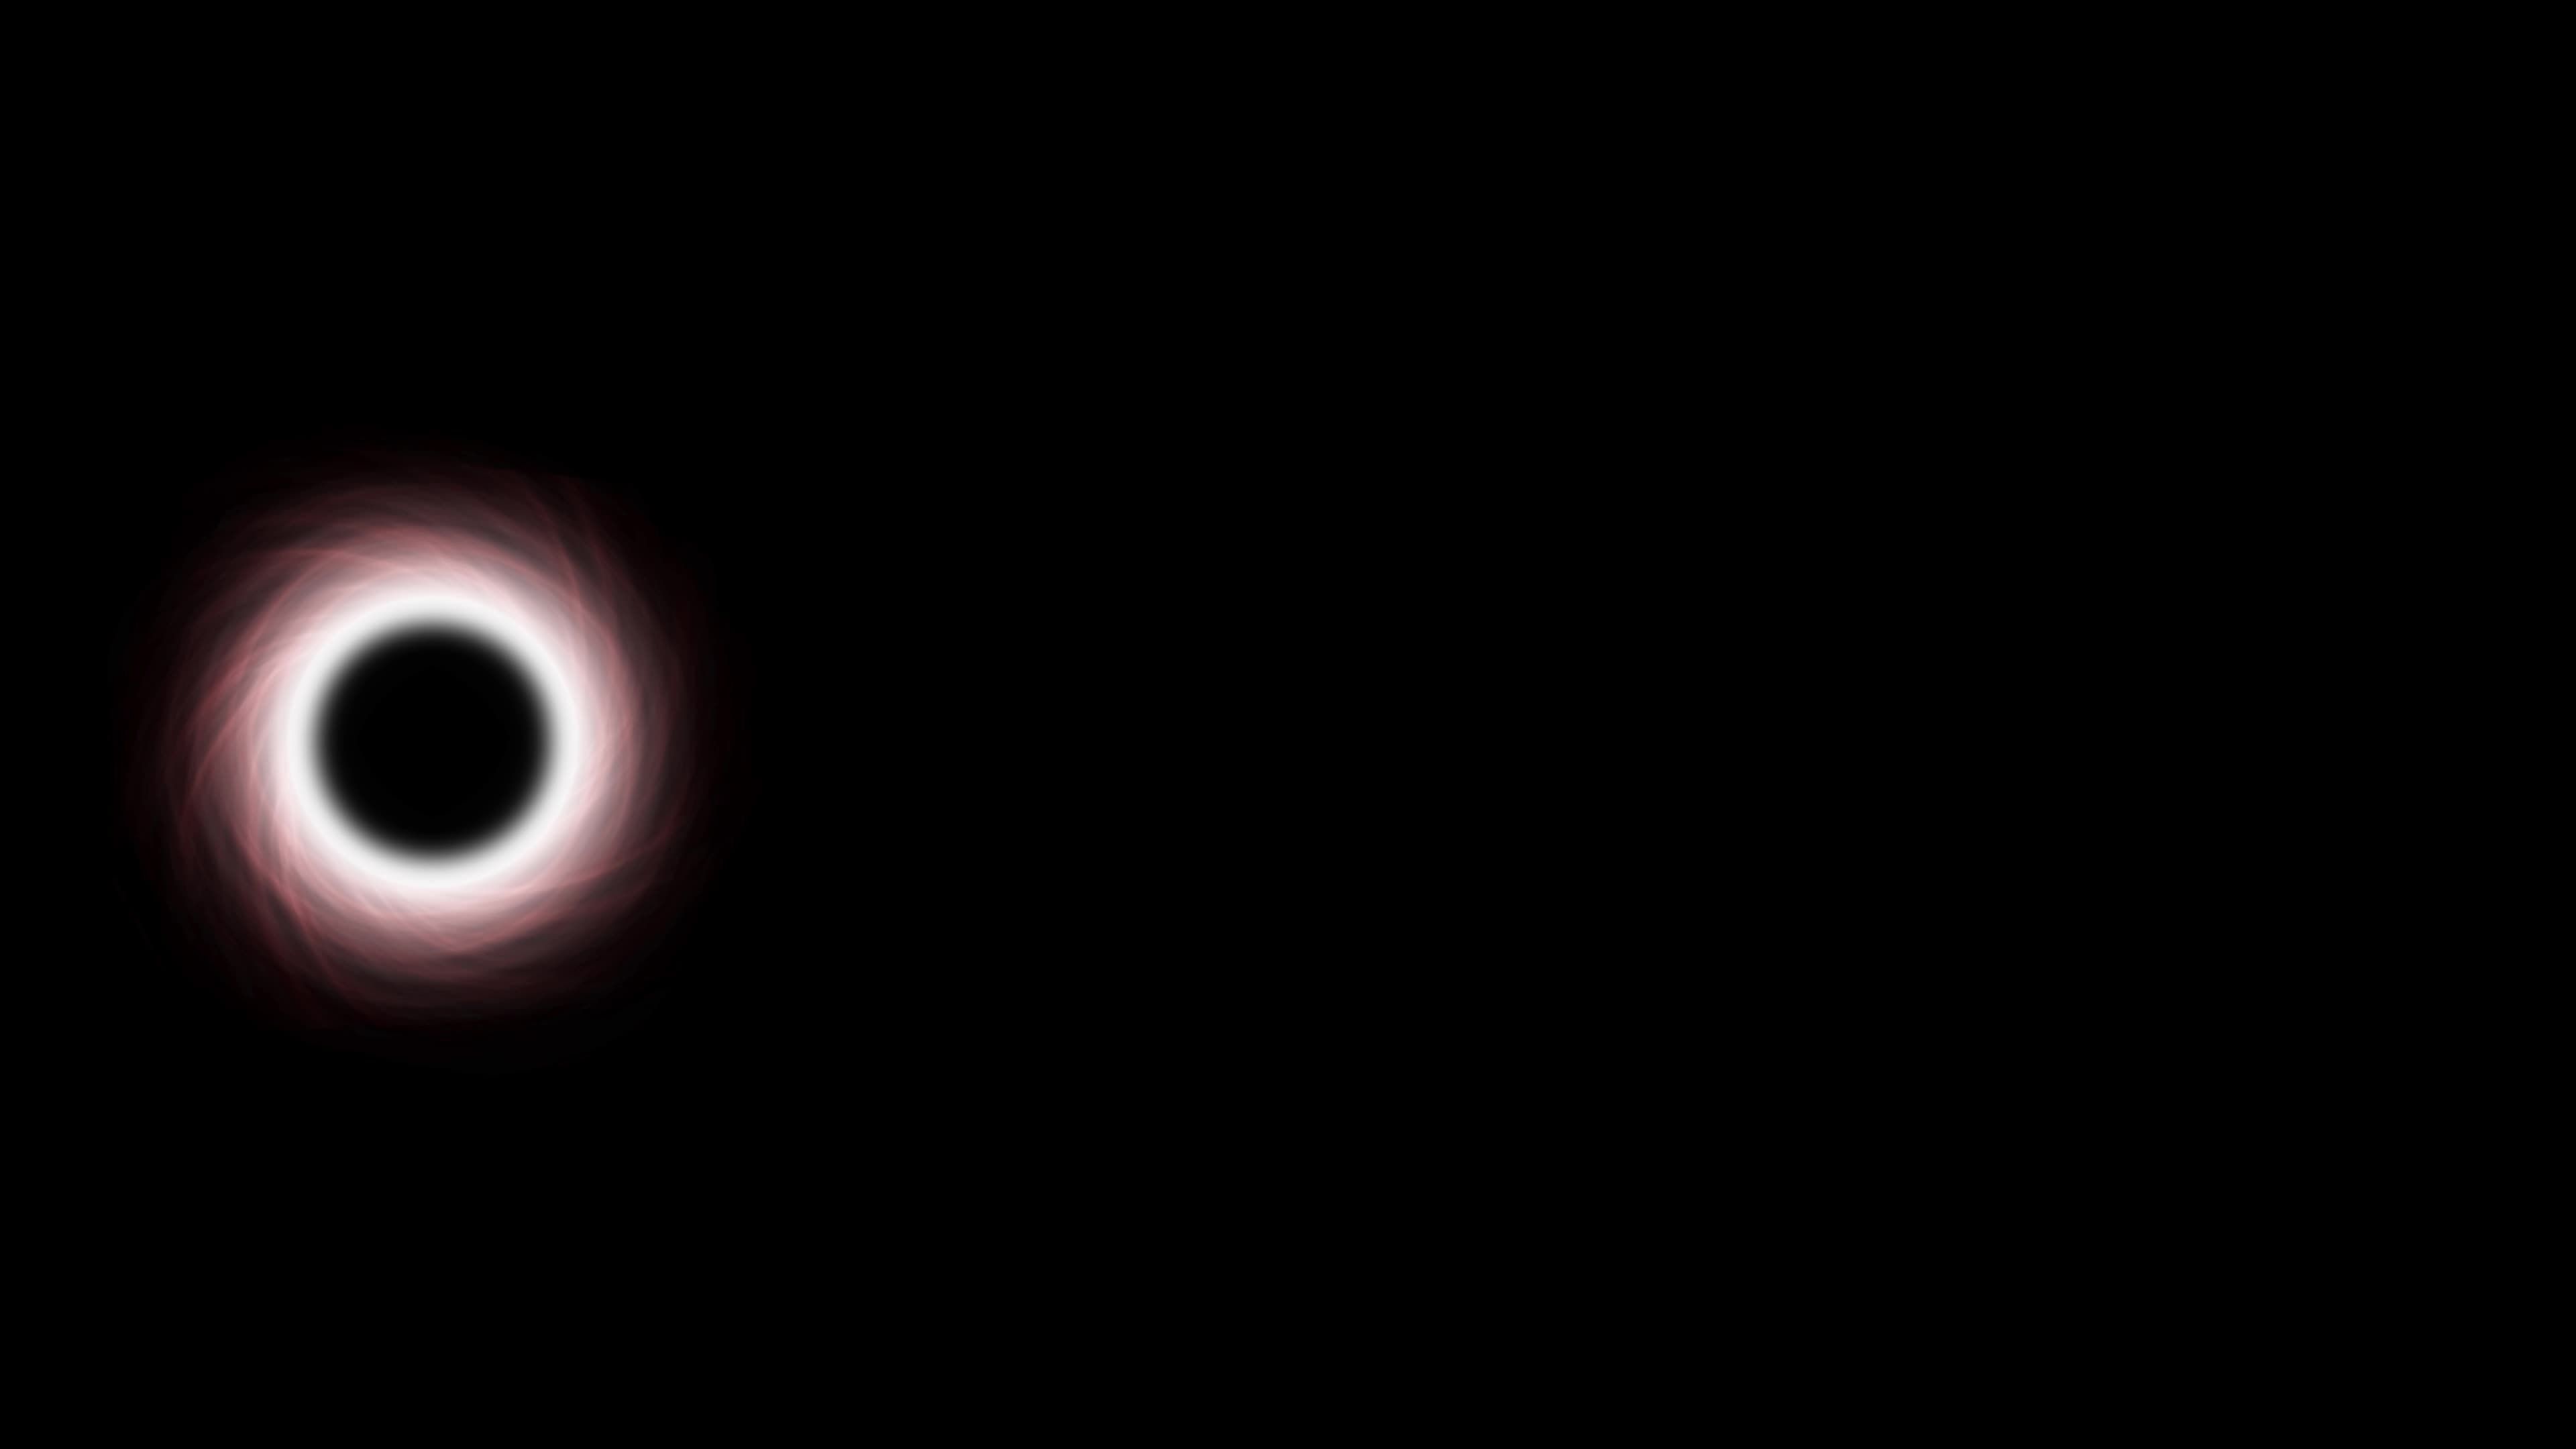  Schwarzes Loch Hintergrundbild 3840x2160. Schwarzes Loch, Das Sich Im Weltraum Bewegt, Abstrakte Neonglühende Strahlen Mit Super Großem Schwarzem Loch In Der Galaxie Mit Nebel. Si Fi Hintergrund. Animation Eines Schwarzen Lochs, Das Sterne Und Weltraum Frisst. Wissenschaftliches Hightech